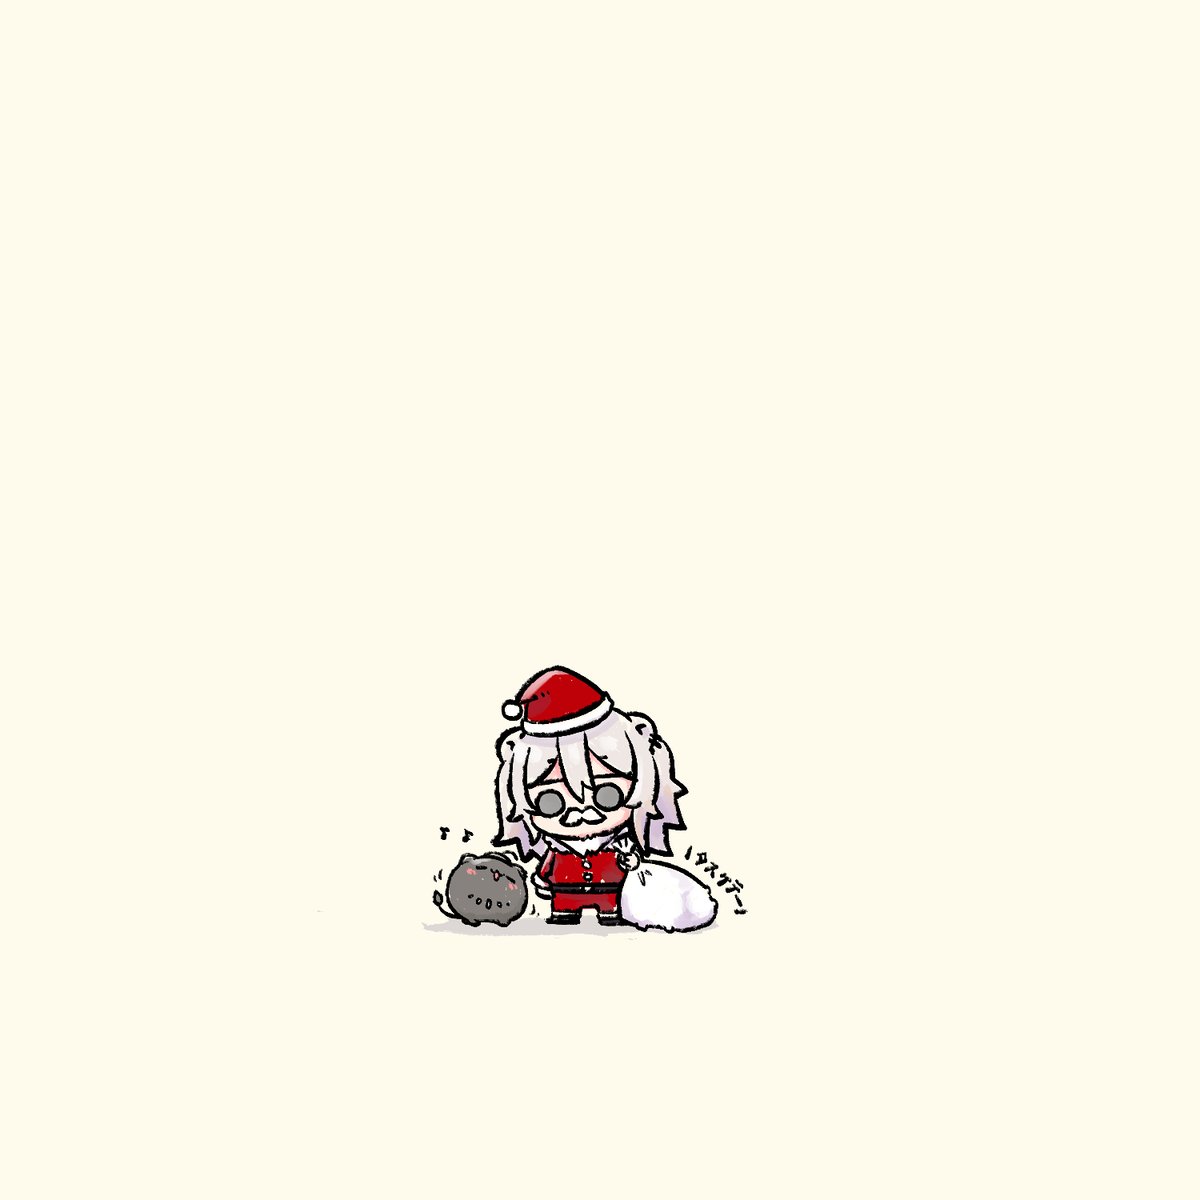 獅白ぼたん 「\ウィーウイッシュアメルクリスマス/#ししらーと 」|Misaネキのイラスト